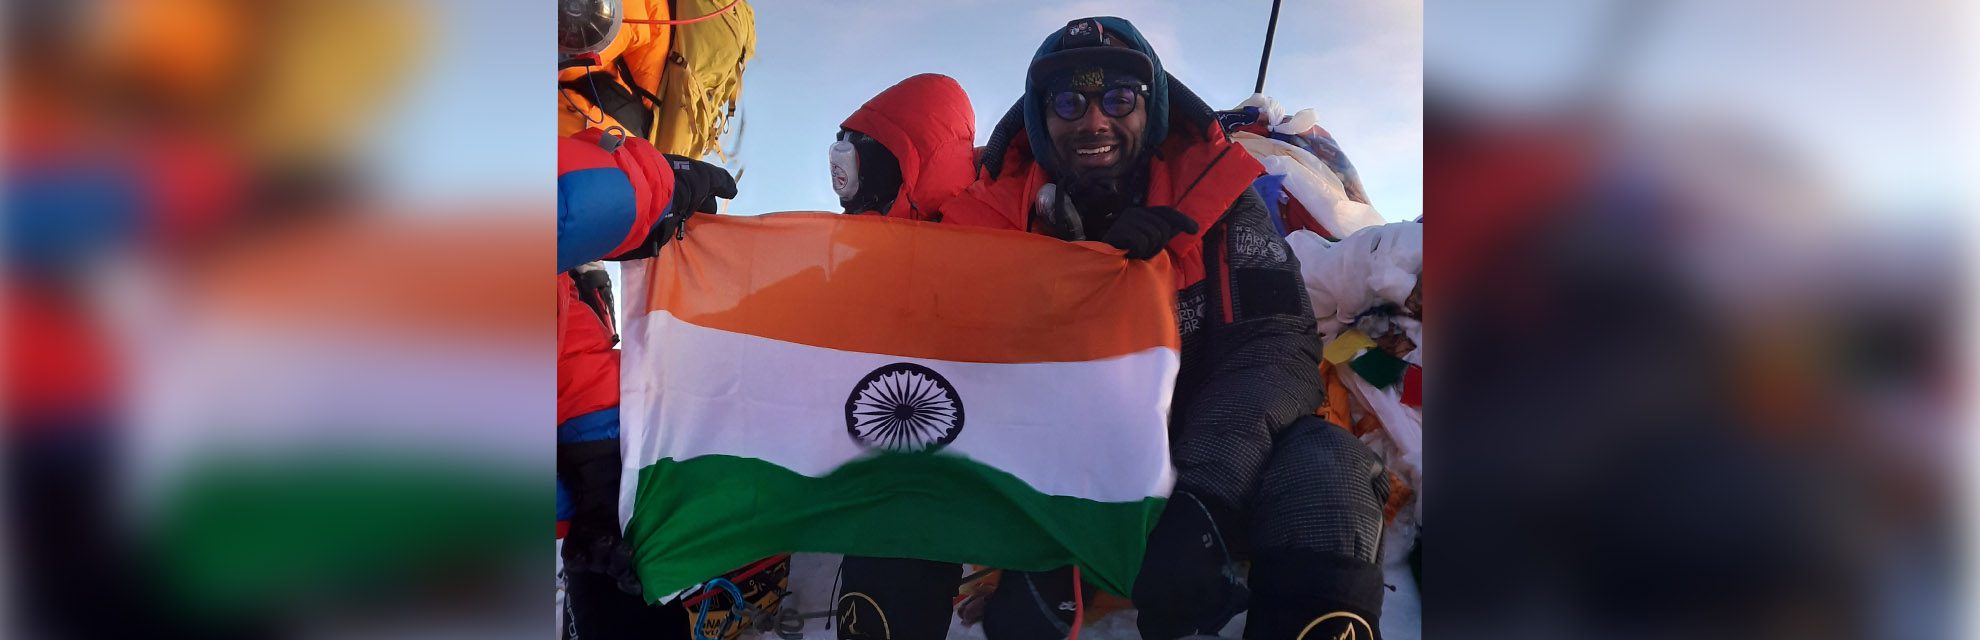 L'alpiniste né en Inde Satish Gogineni établit un nouveau record en gravissant le mont Everest et le mont Lhotse en 20 heures